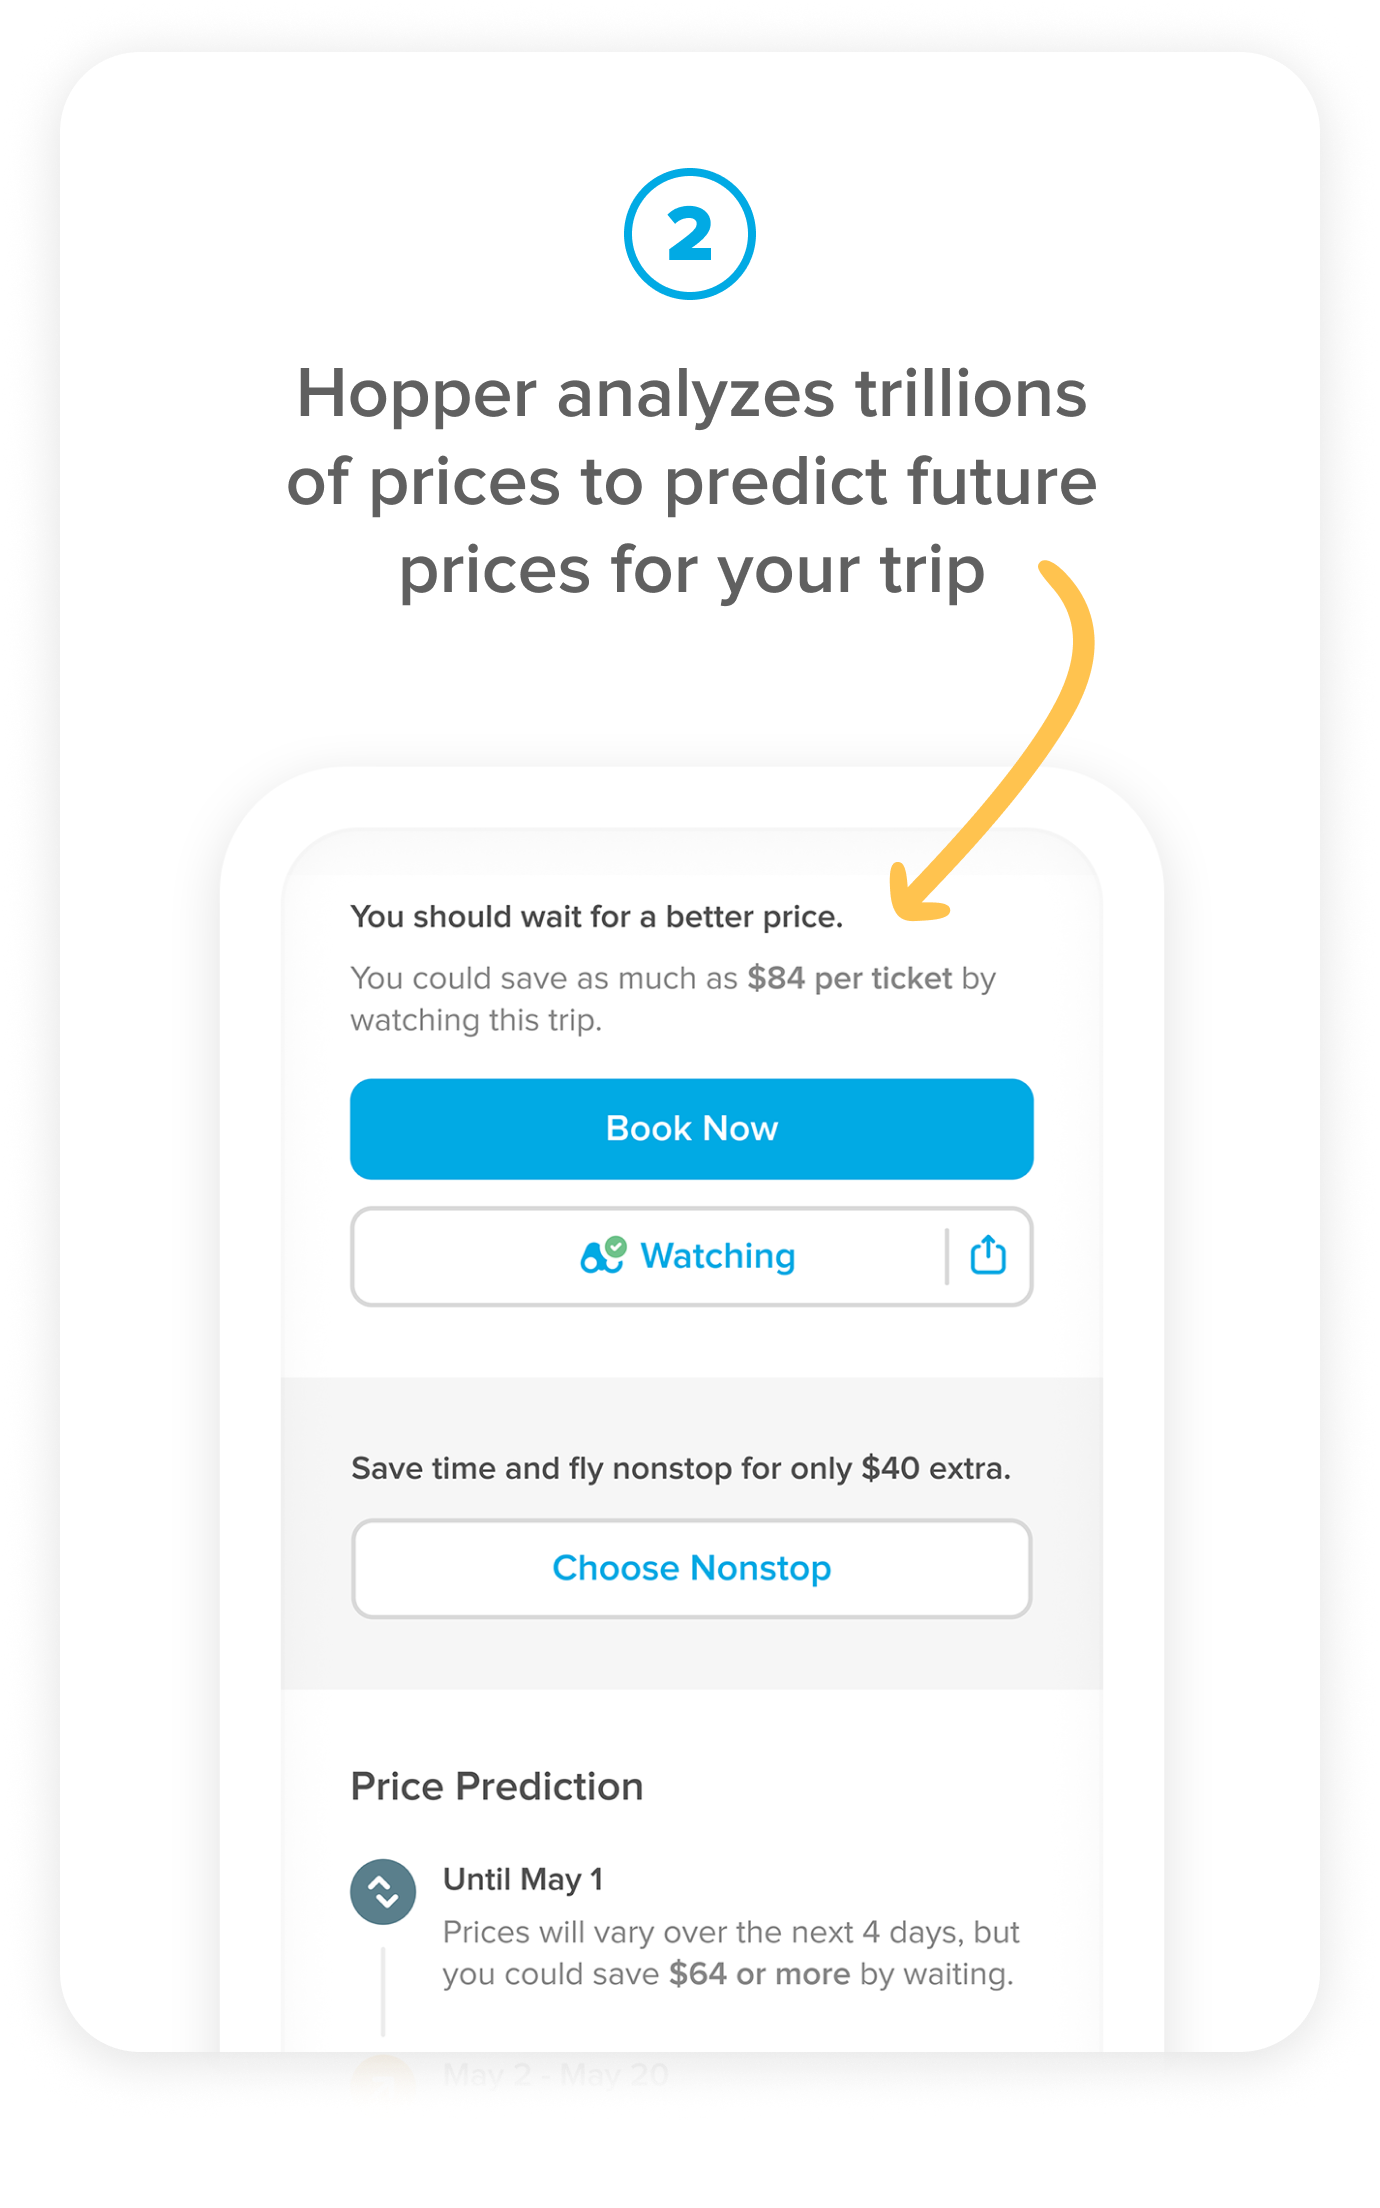 Price Prediction Step 2